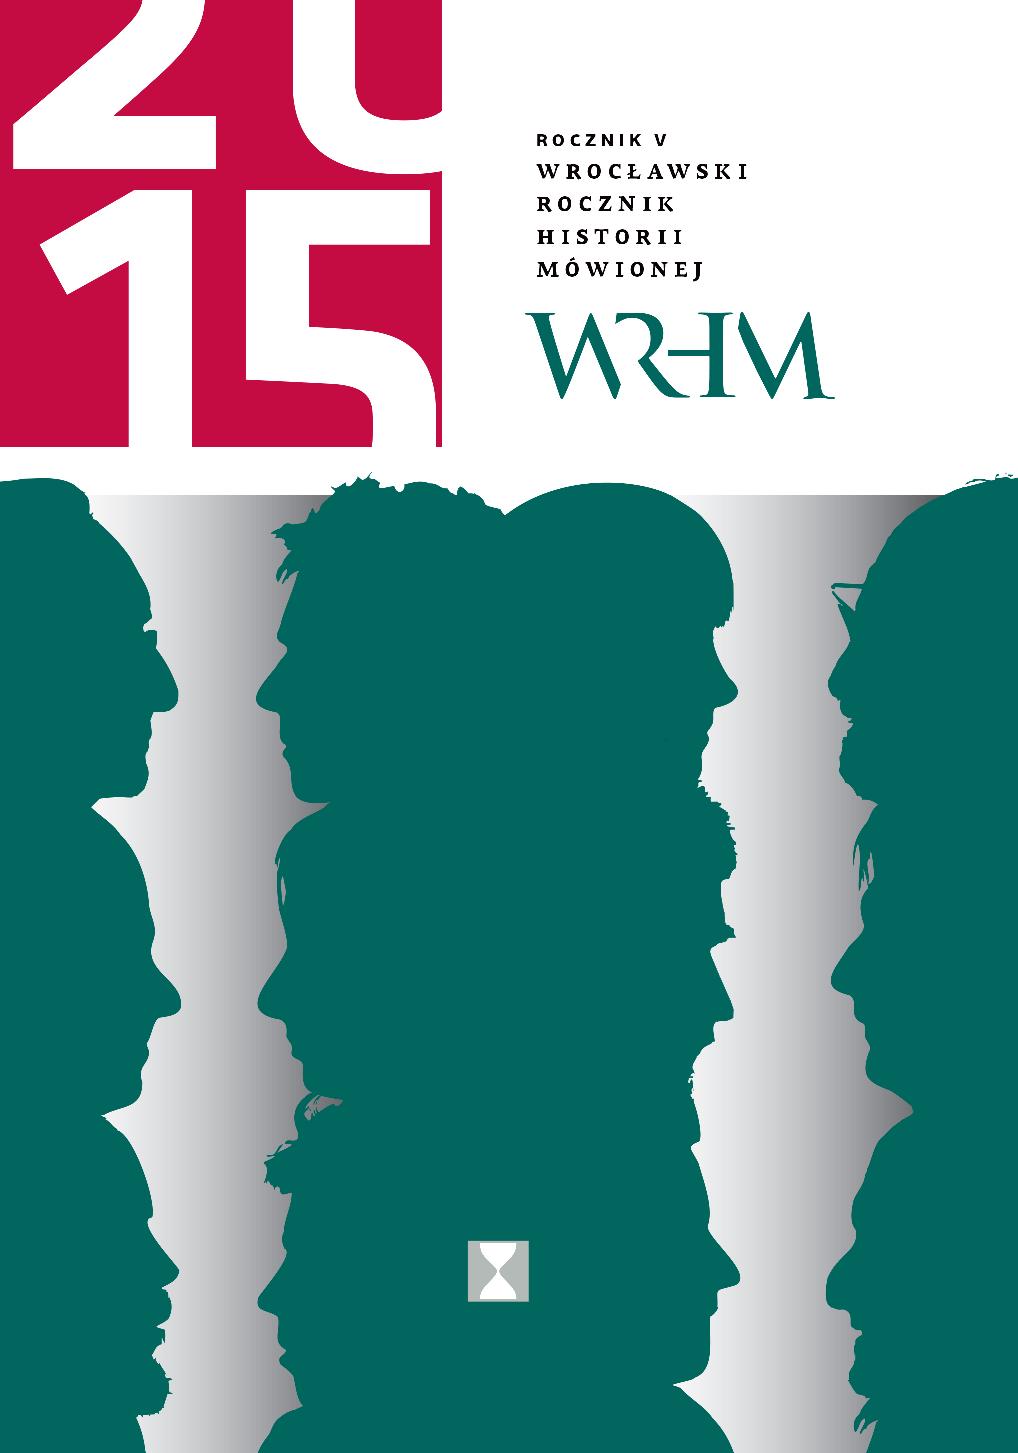 "Akademicki Wrocław - powojenna tożsamość miasta w relacjach profesorów" - sprawozdanie z dyskusji, Wrocław, 26 listopada 2015 r. Cover Image